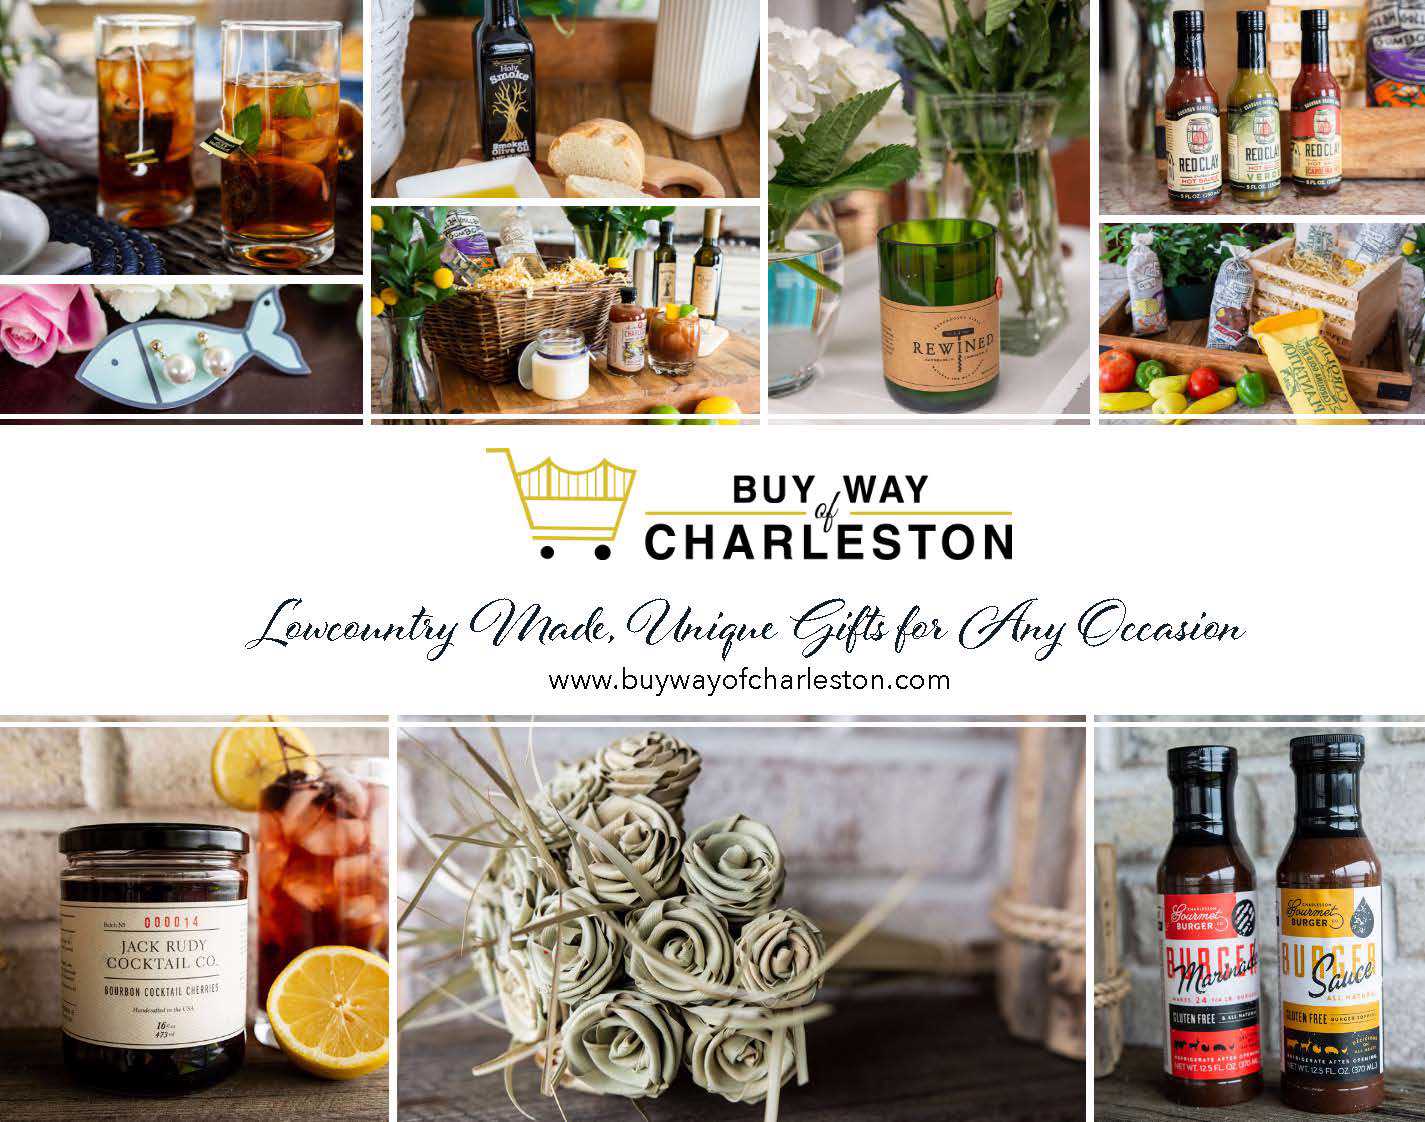 Buy Way of Charleston